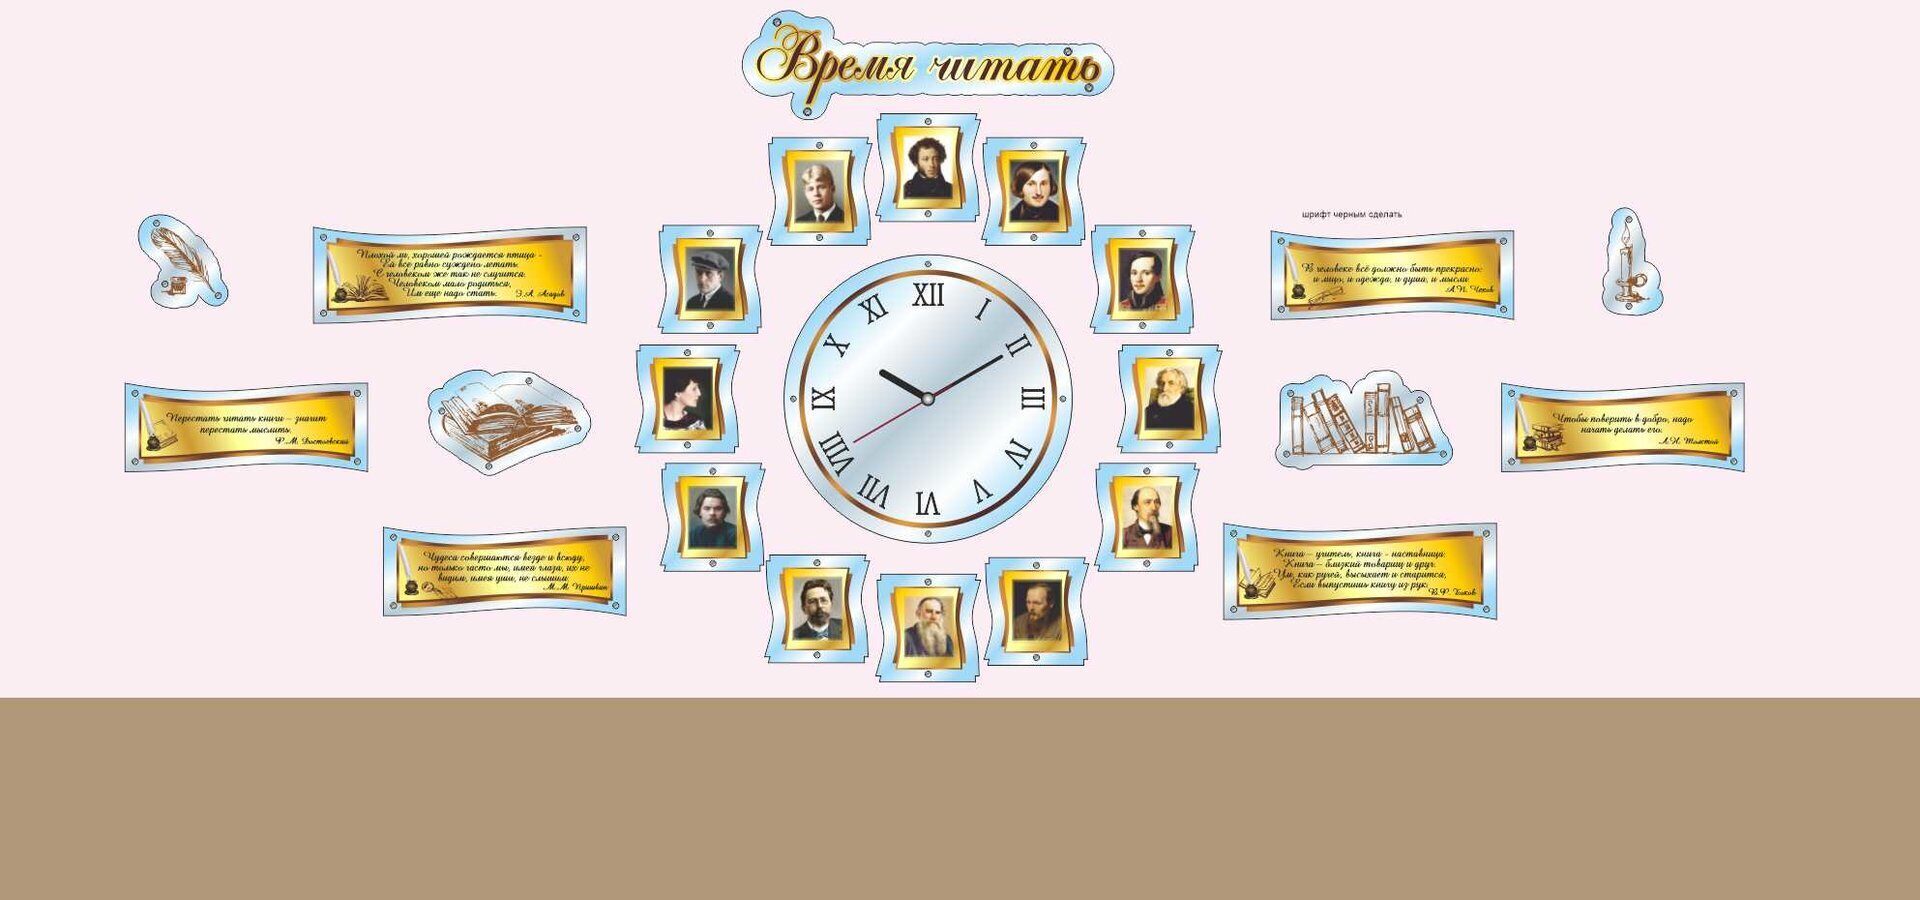 1842 Русский язык и литература, цитаты , декоративное оформление с часами